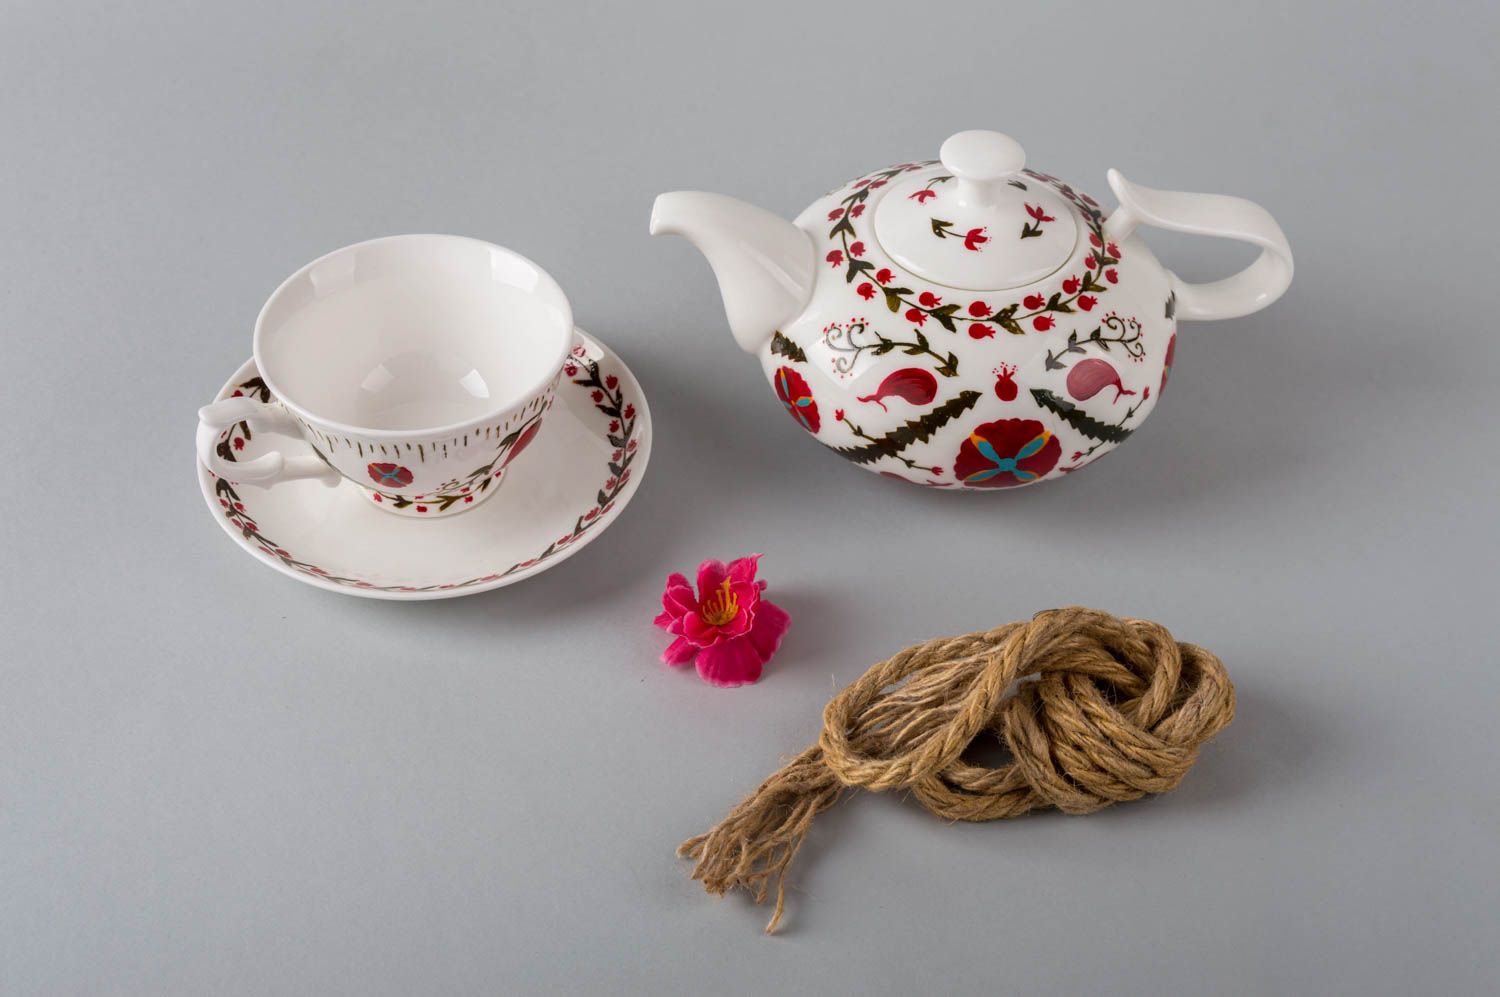 Handmade Keramik Tasse Teetasse mit Kanne Keramik Teekanne Tee Geschirr bunt foto 1